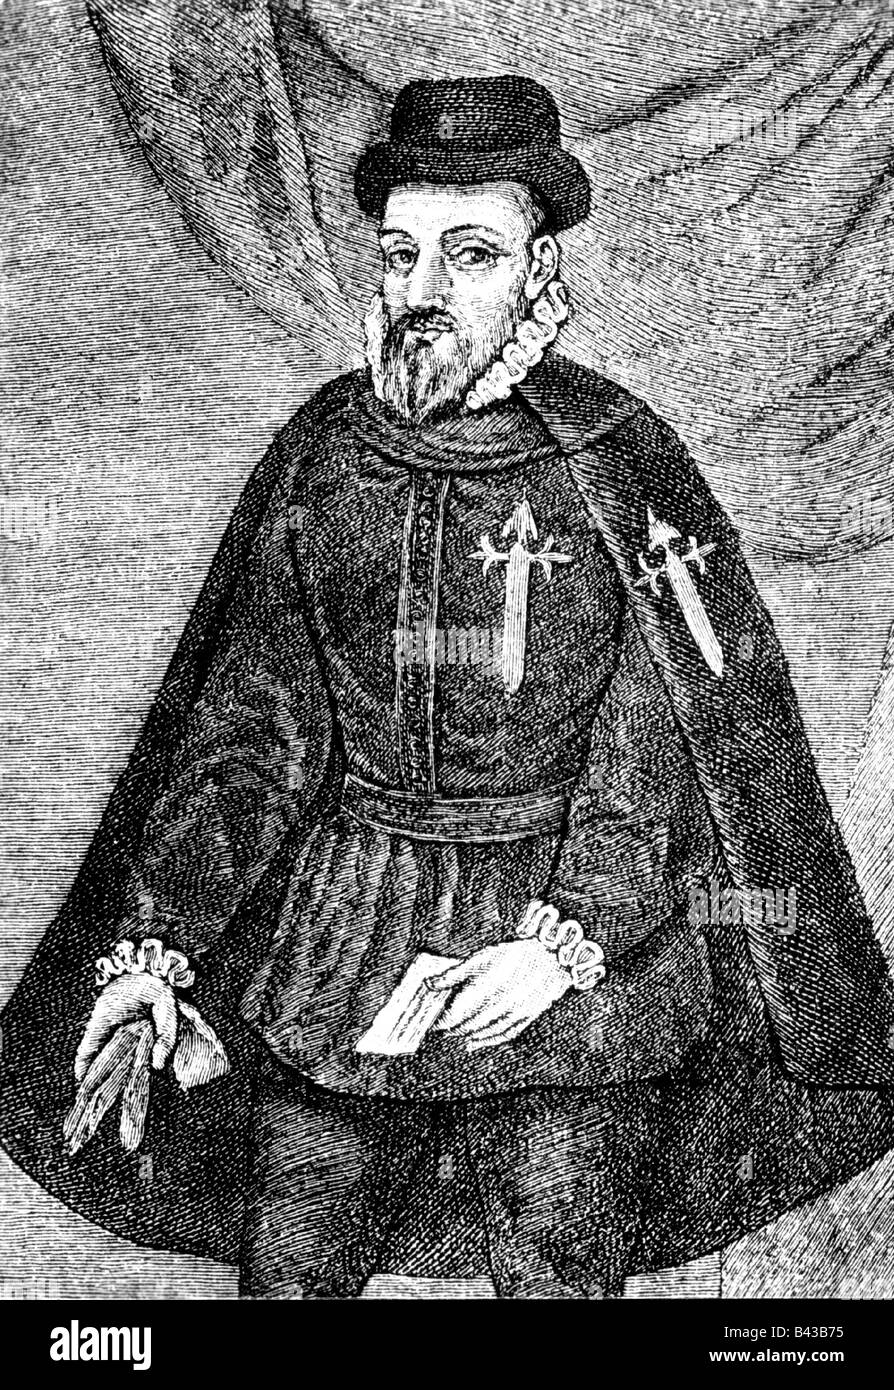 Pizarro, Francisco, vers 1475 - 26.6.1541, le conquistador espagnol, demi-longueur, dans l'habitude d'ordre religieux - militaire de Santiago de Compostela, gravure après peinture, 19e siècle, l'artiste n'a pas d'auteur pour être effacé Banque D'Images